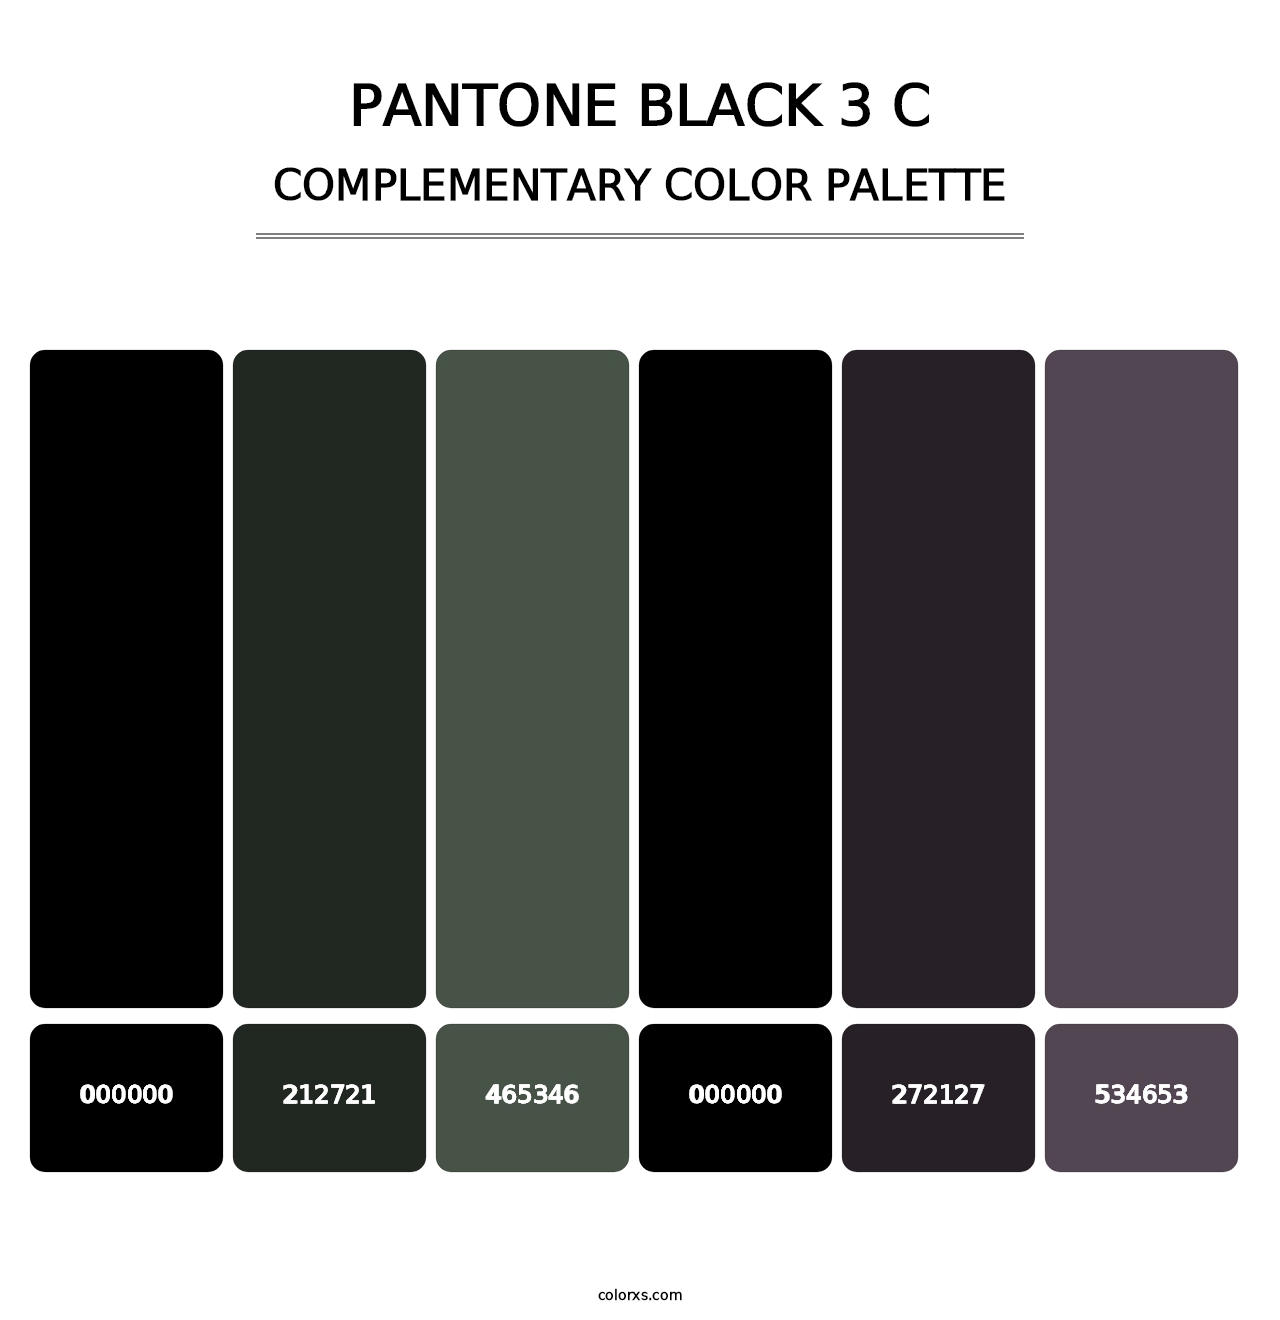 PANTONE Black 3 C - Complementary Color Palette